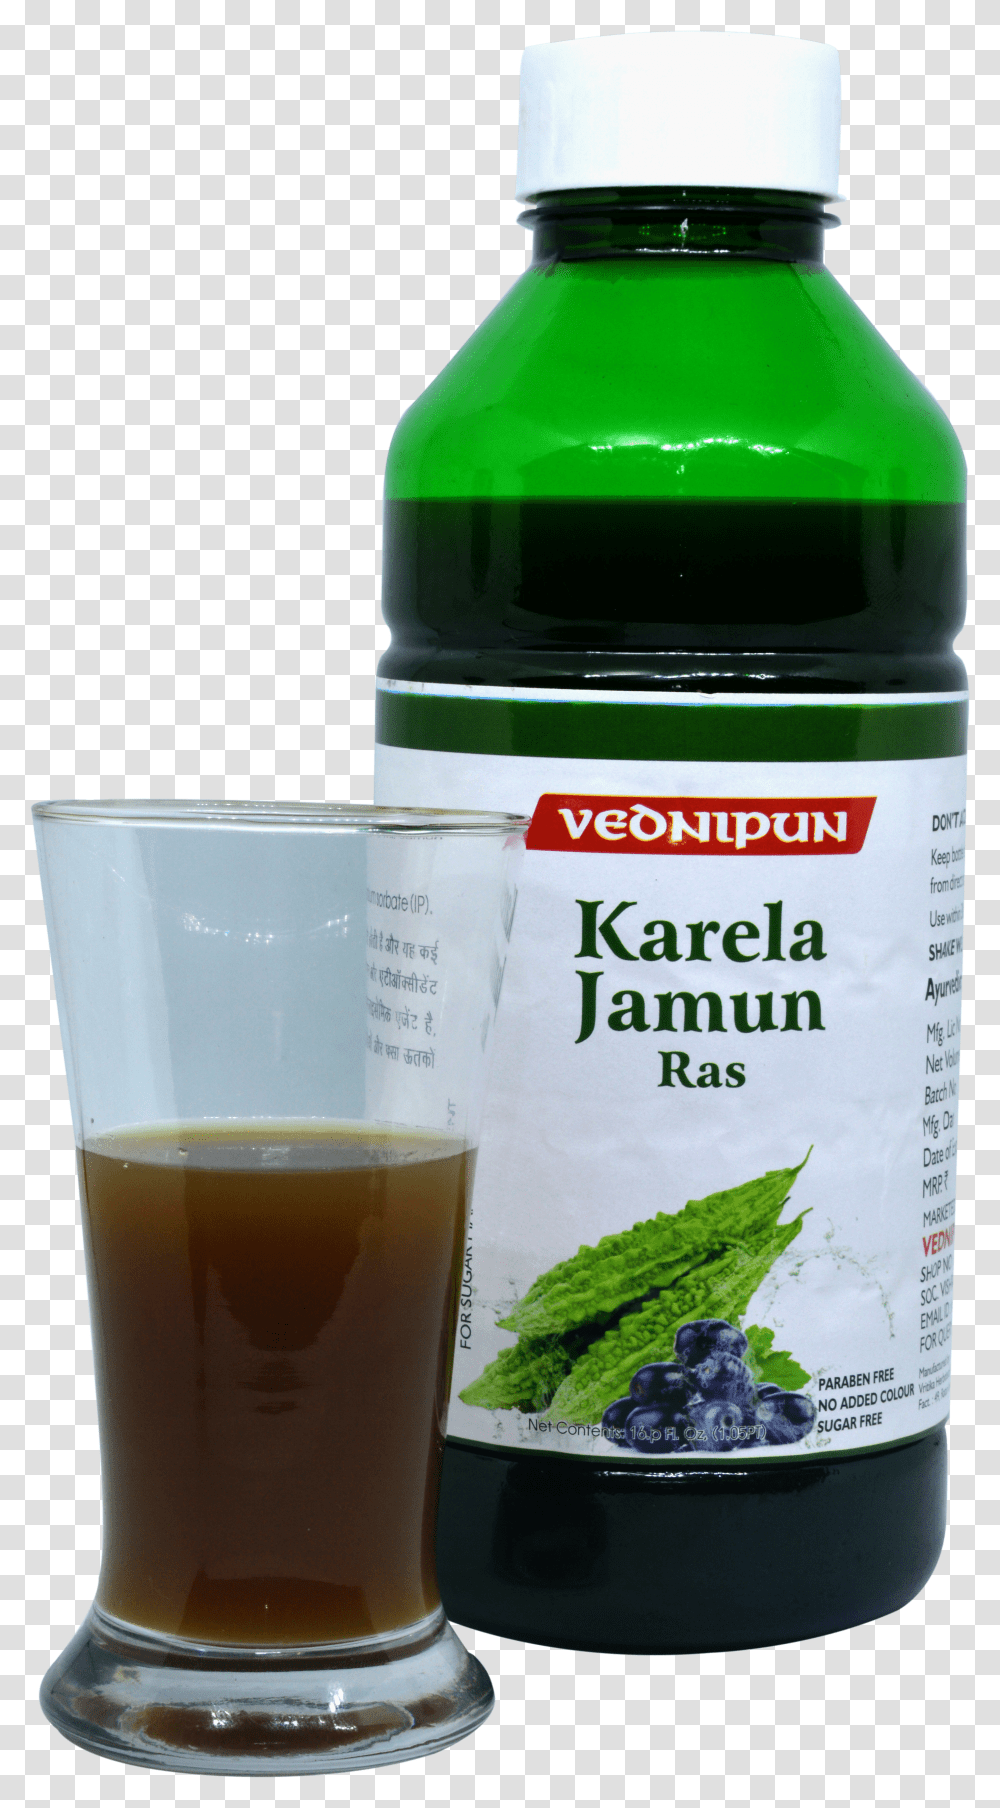 Karela Ras Juice Image Vednipun, Beer, Alcohol, Beverage, Drink Transparent Png